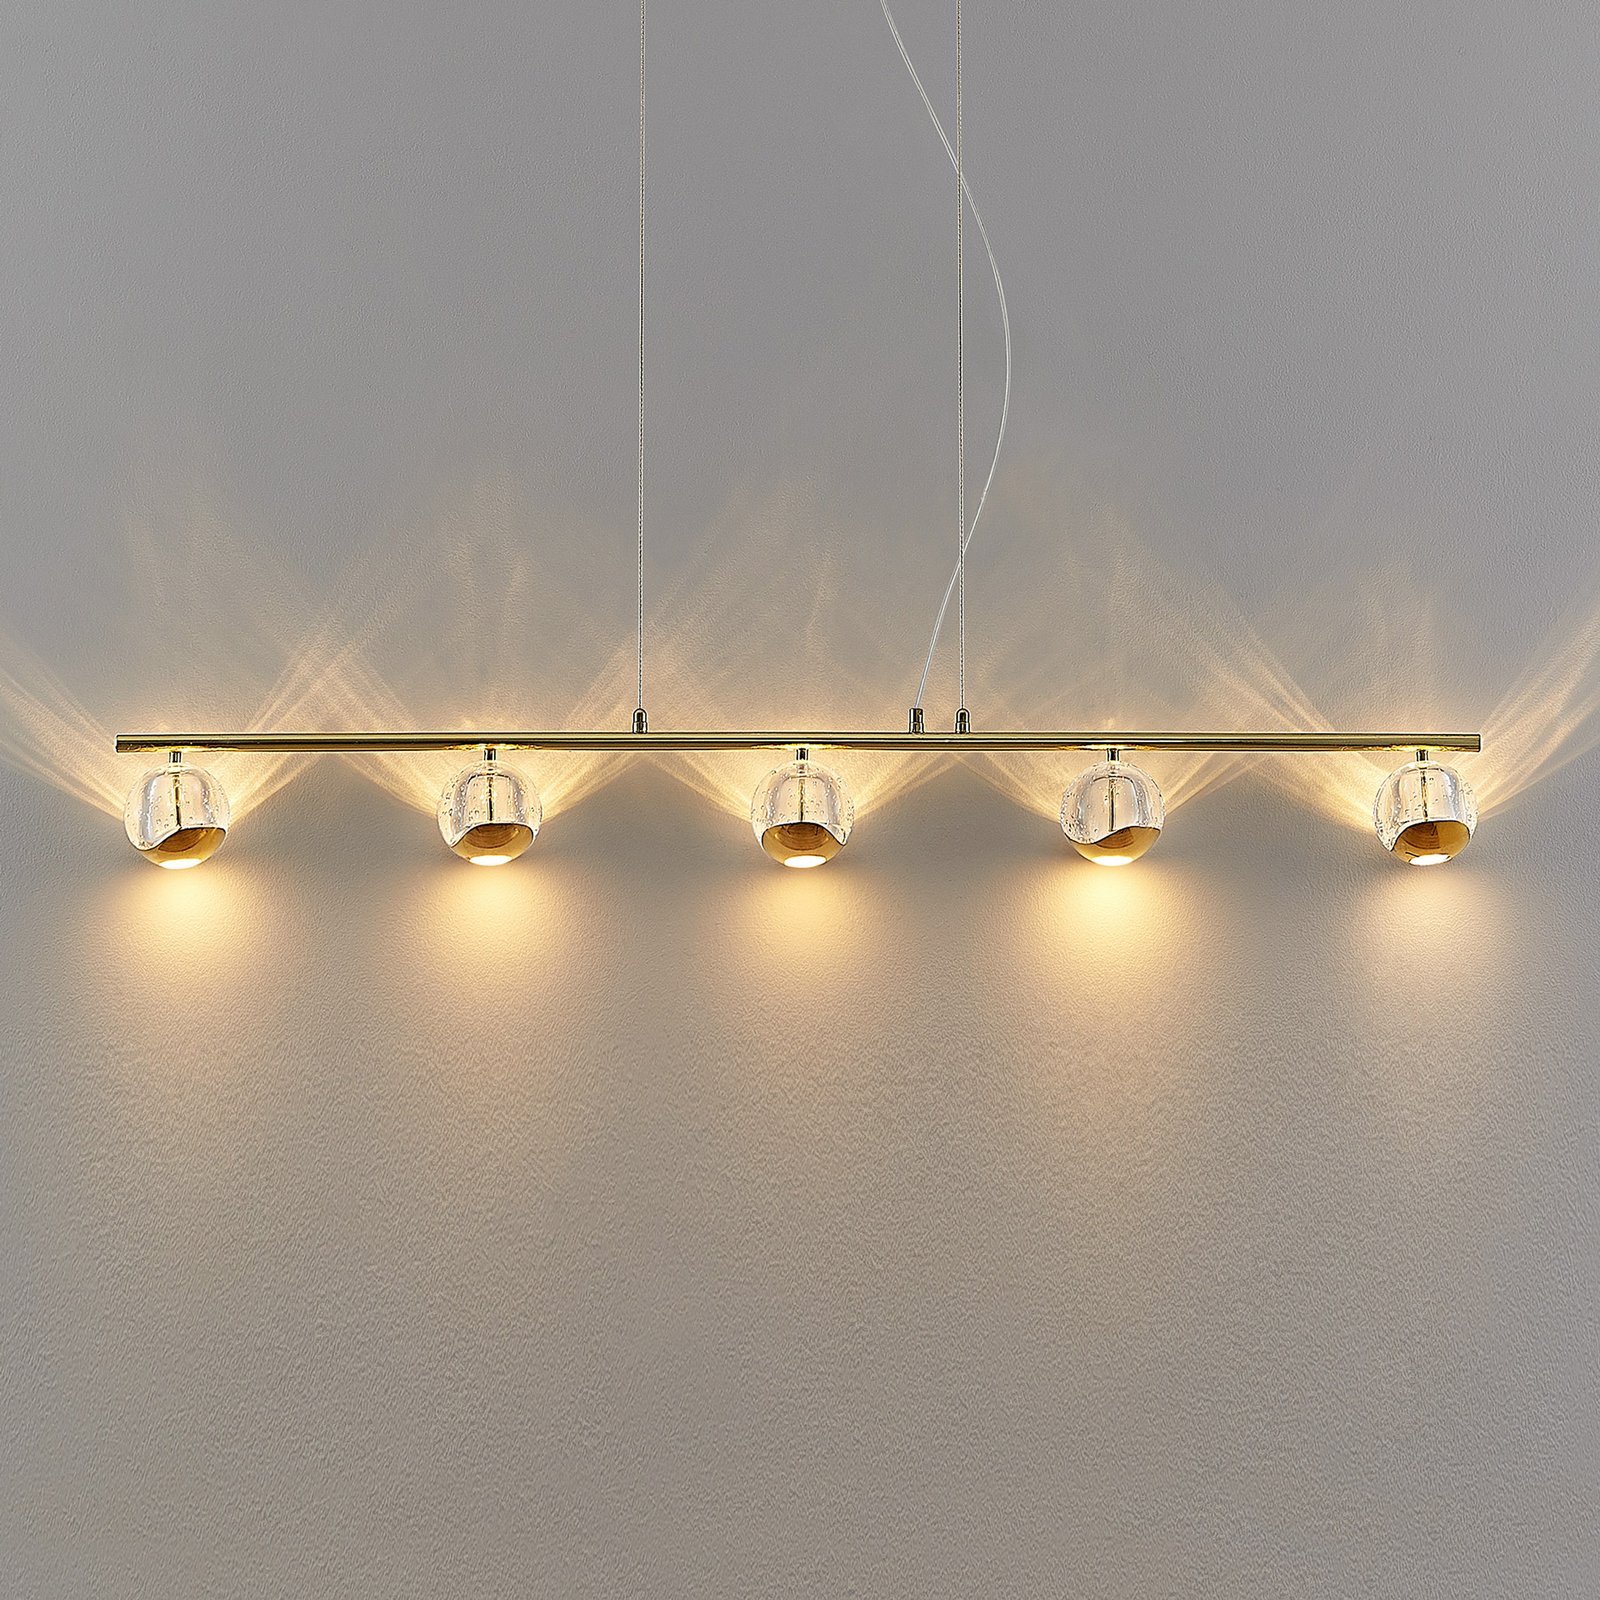 Lucande Kilio LED-hänglampa, 5 lampor, guld